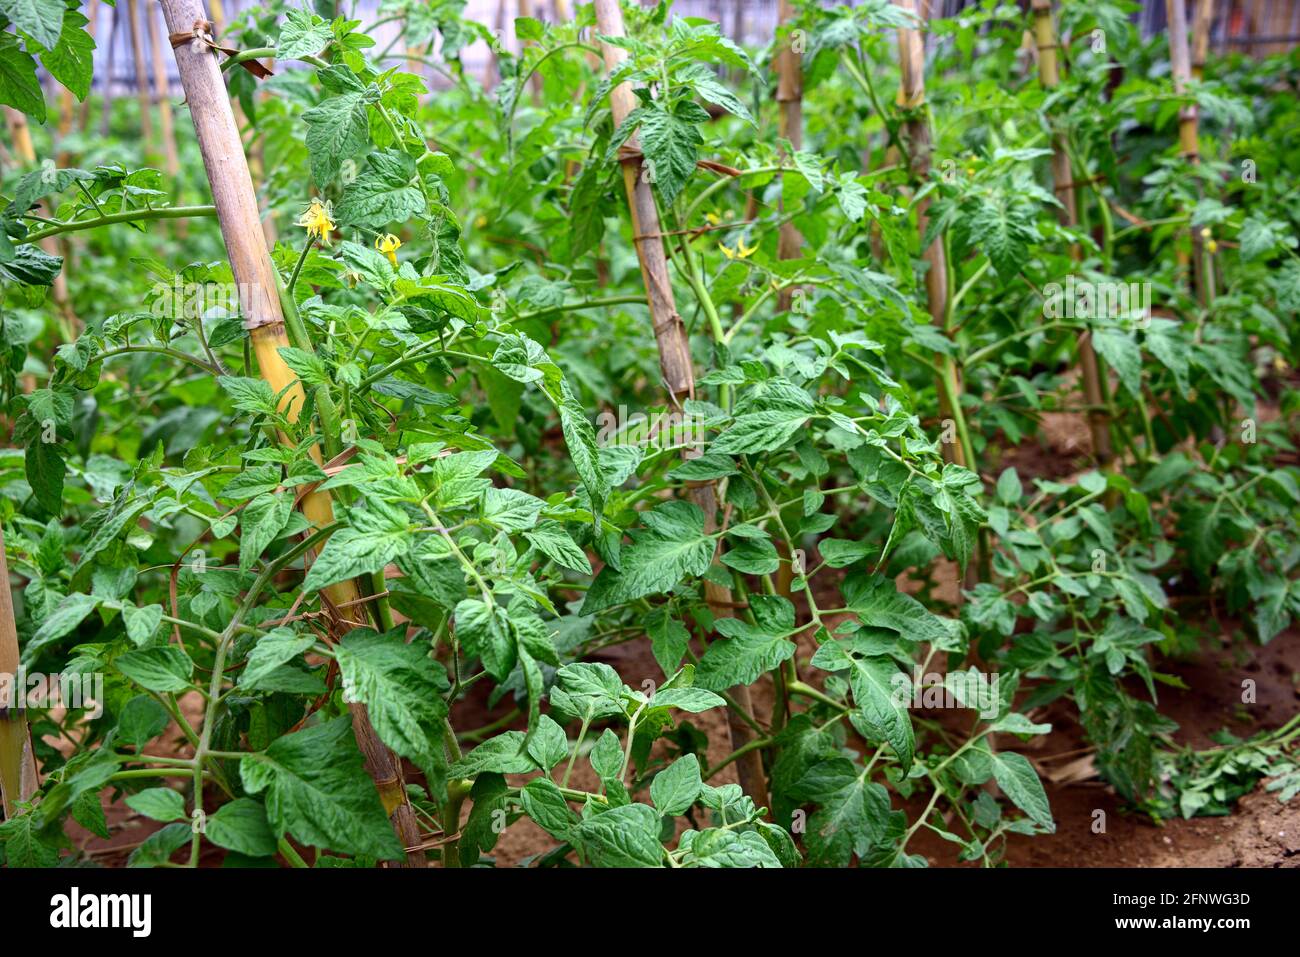 Tomatenpflanze, die Blüten werden auf racemischen Blütenständen gebildet, die am Axil der Blätter entstehen Stockfoto